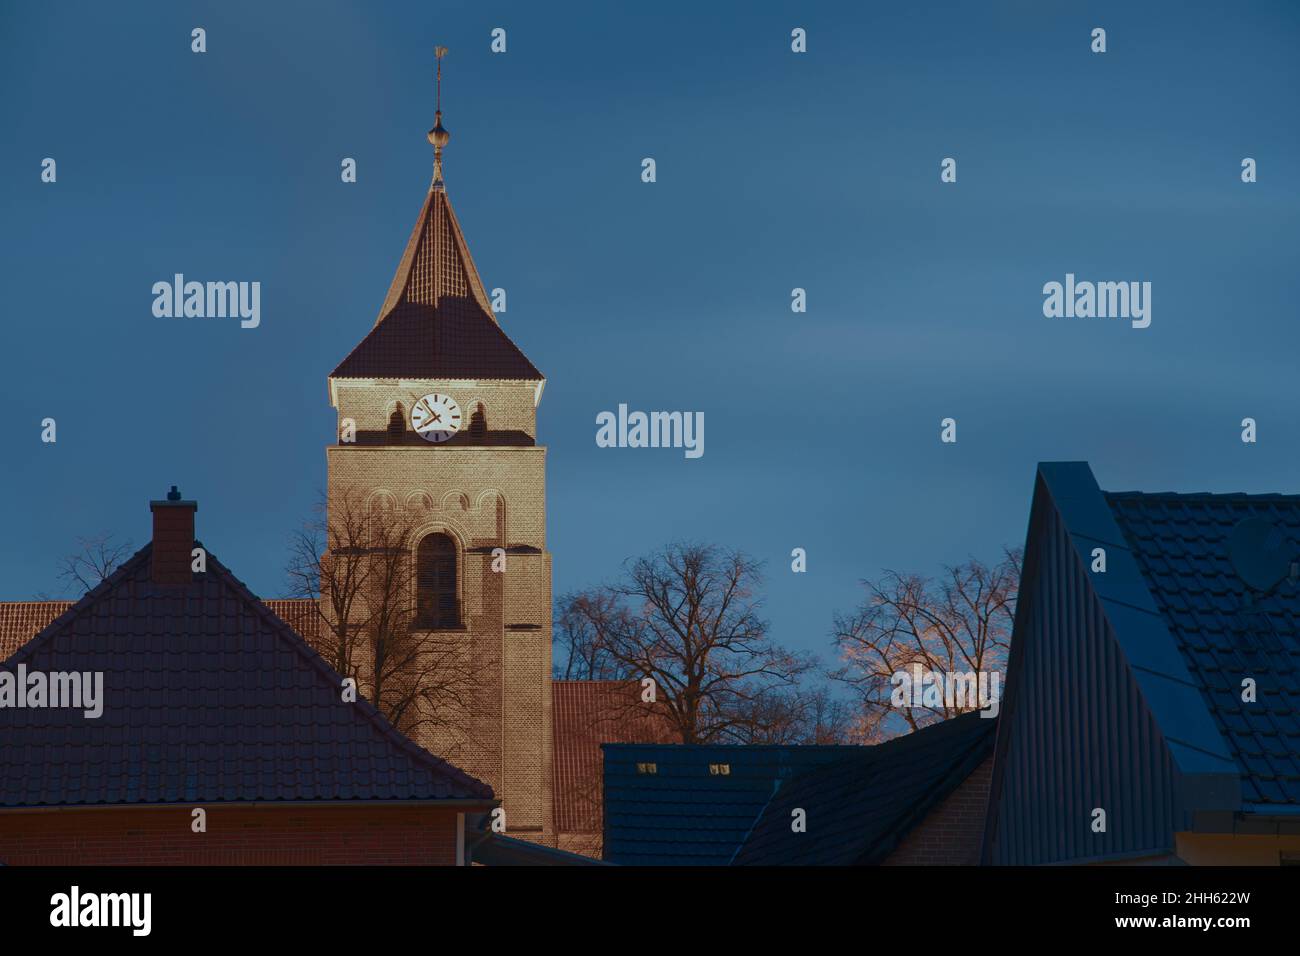 Villaggio chiesa torre illuminata in inverno con un orologio all'ora blu Foto Stock